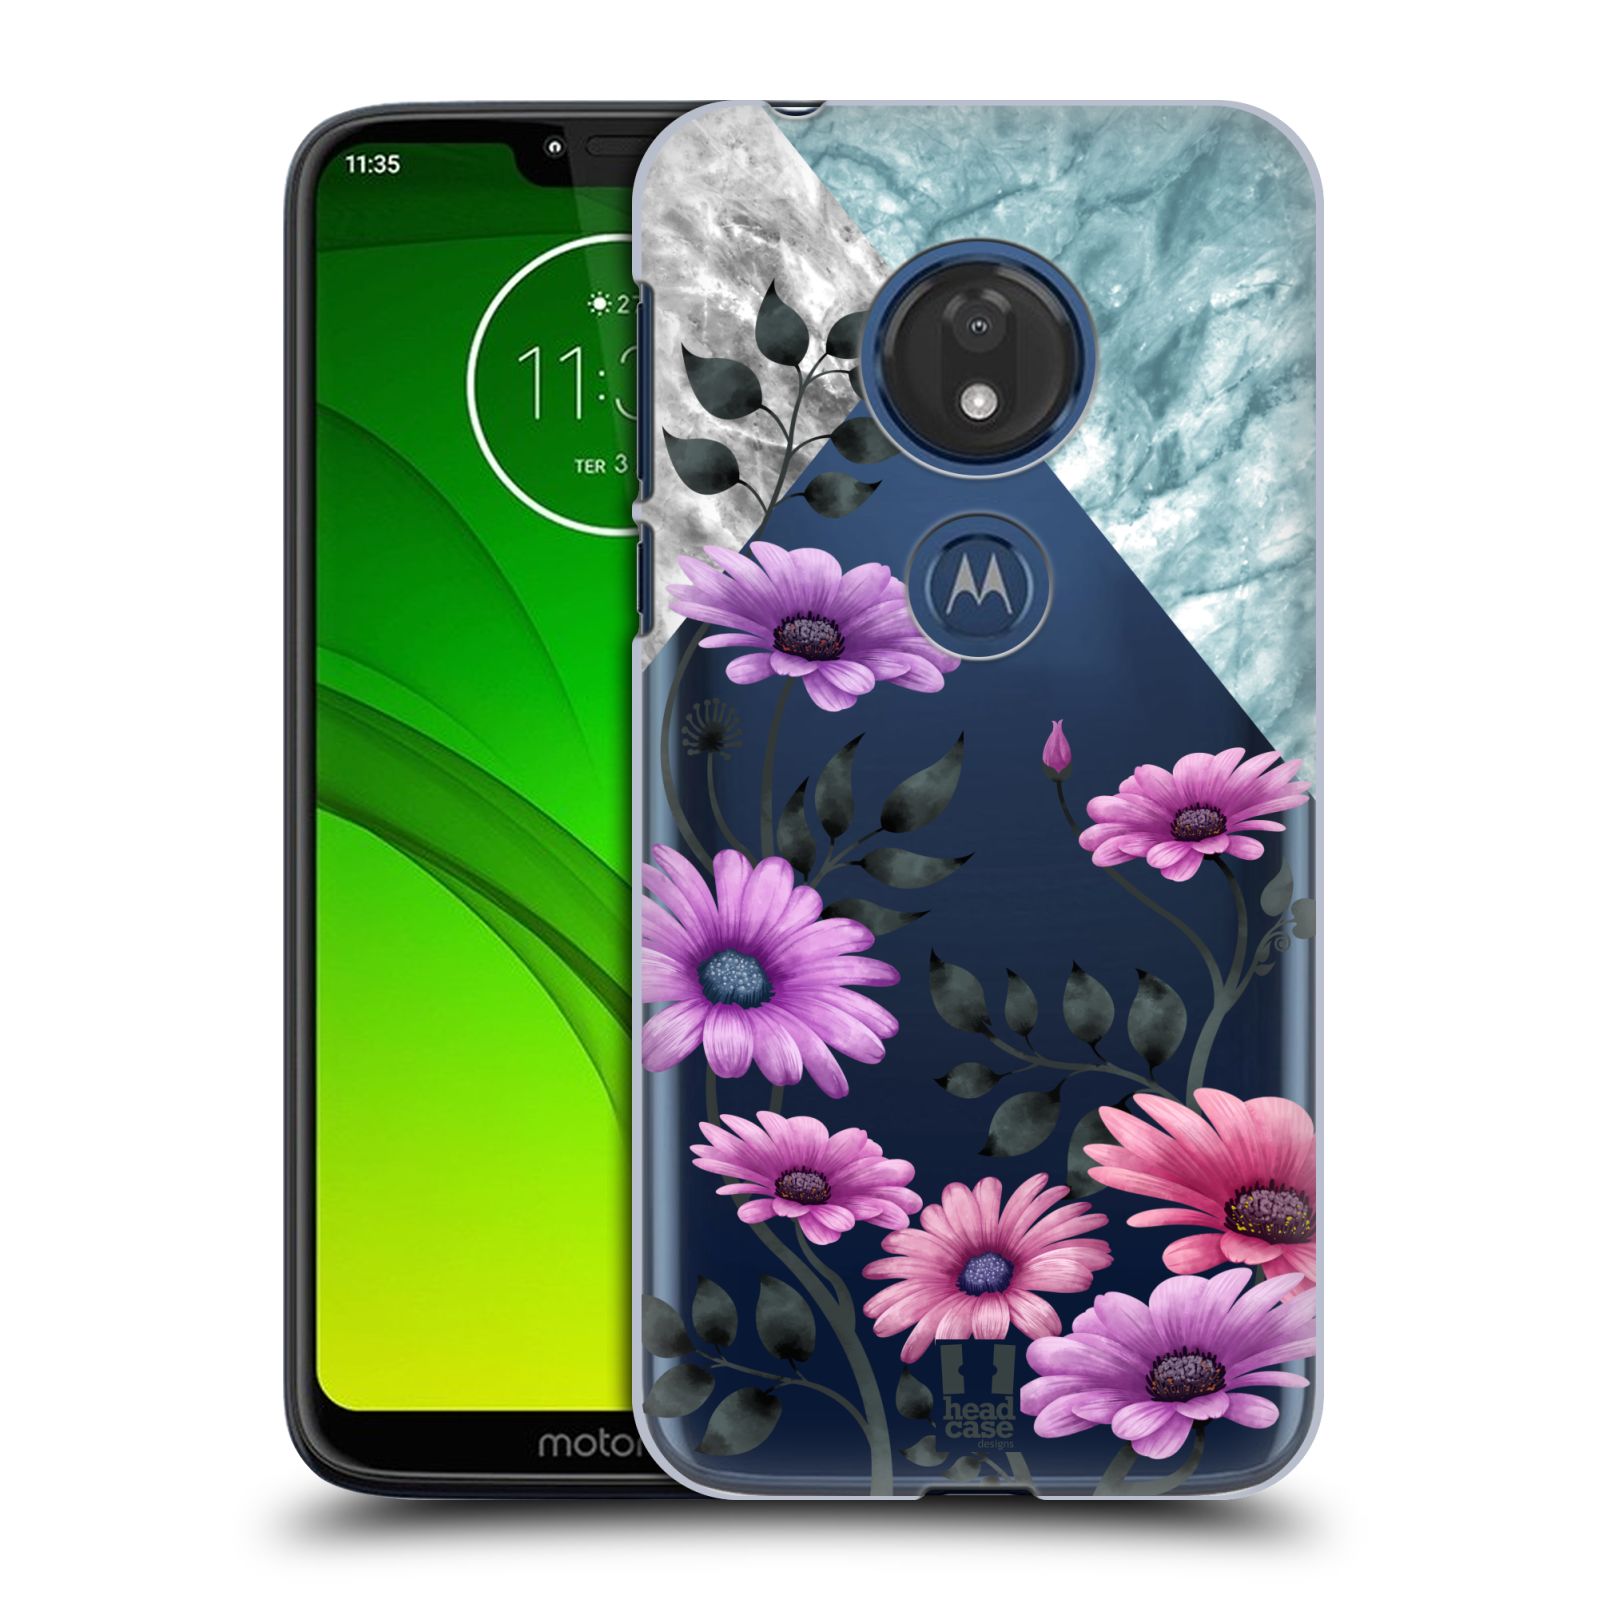 Pouzdro na mobil Motorola Moto G7 Play květiny hvězdnice, Aster fialová a modrá